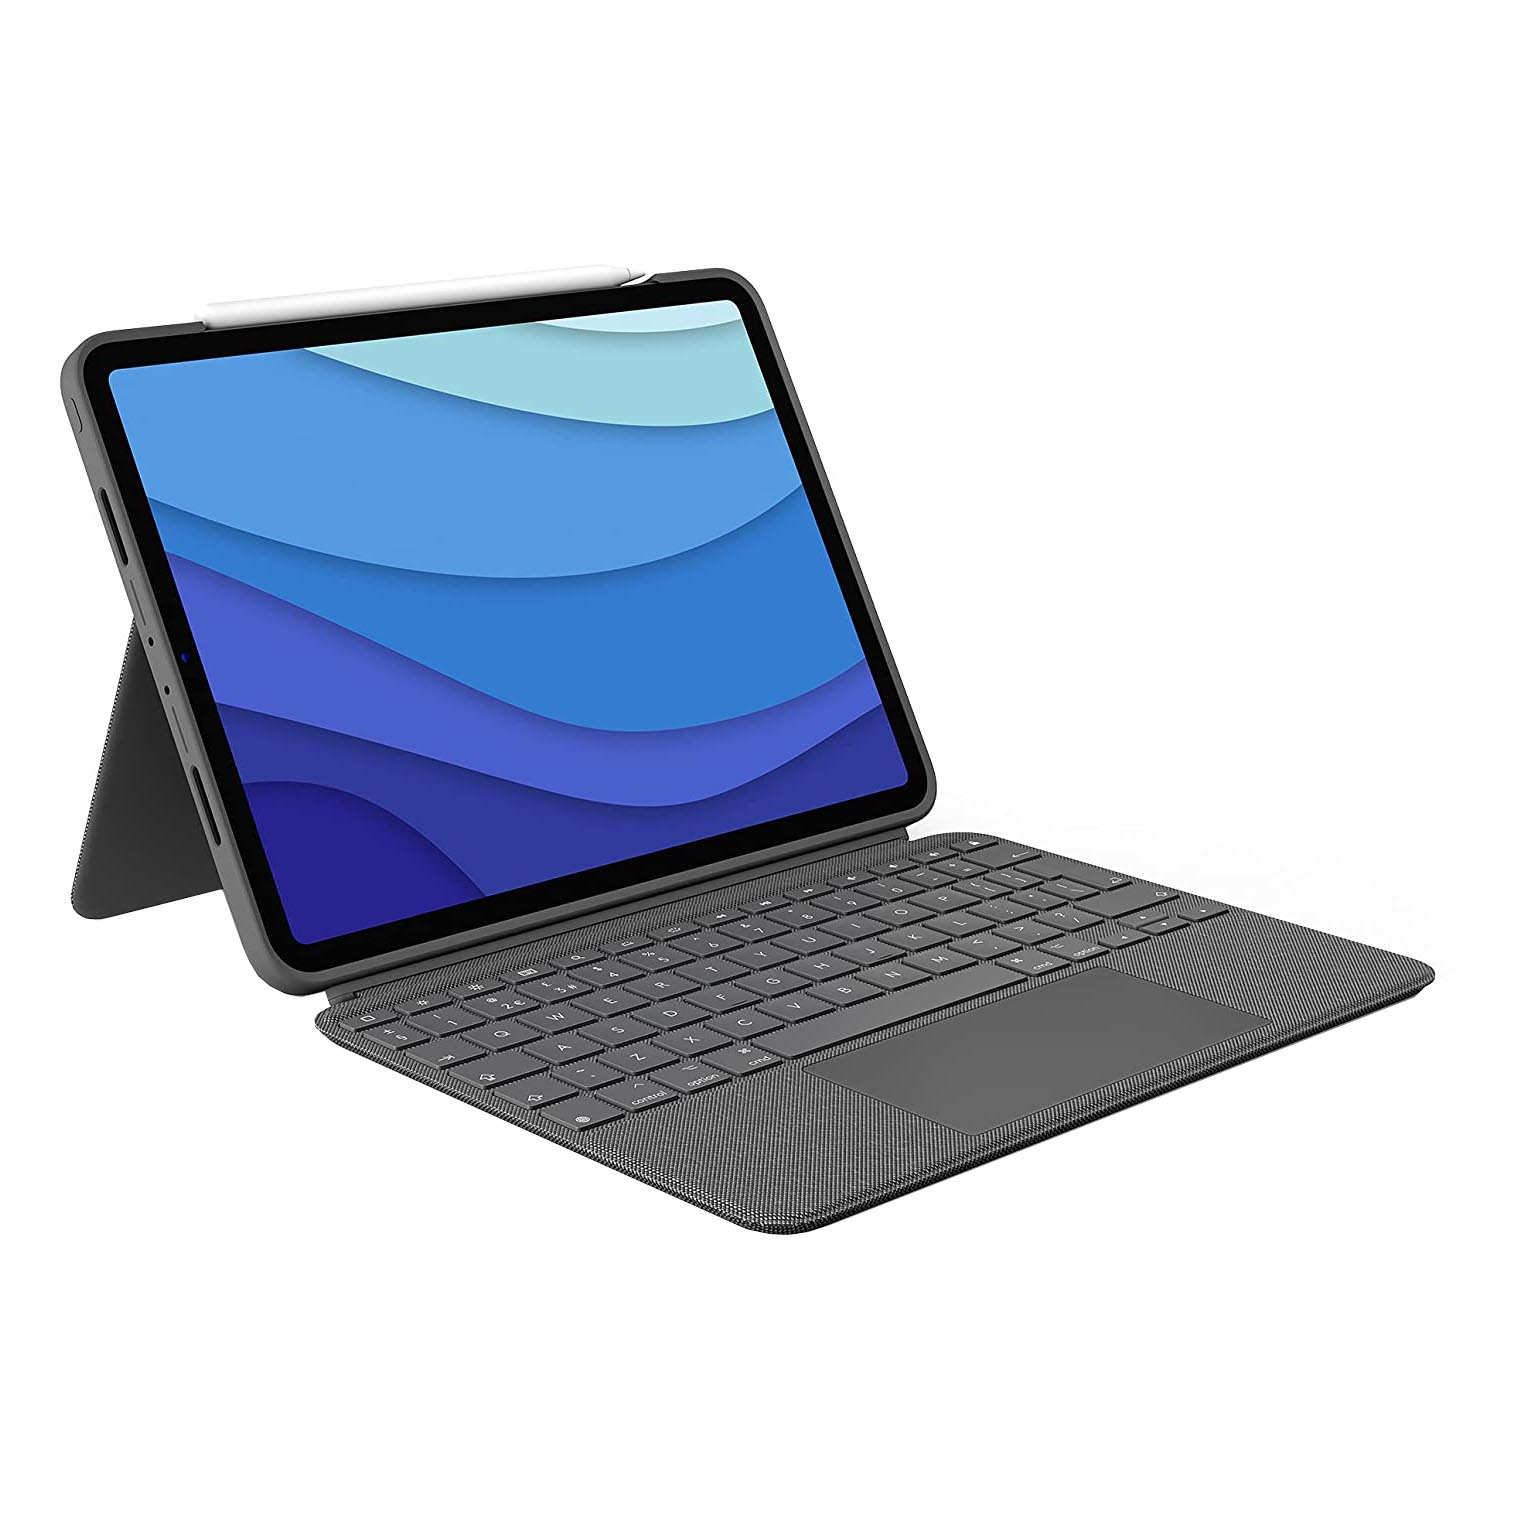 Чехол-клавиатура Logitech Combo Touch для iPad Pro 12.9'', английская раскладка, серый чехол обложка mypads стёганная кожа в ромбик с узором для ipad 2 2011 ipad 3 2012 ipad 4 2012 a1395 a1396 a1397 a1416 a1430 a140